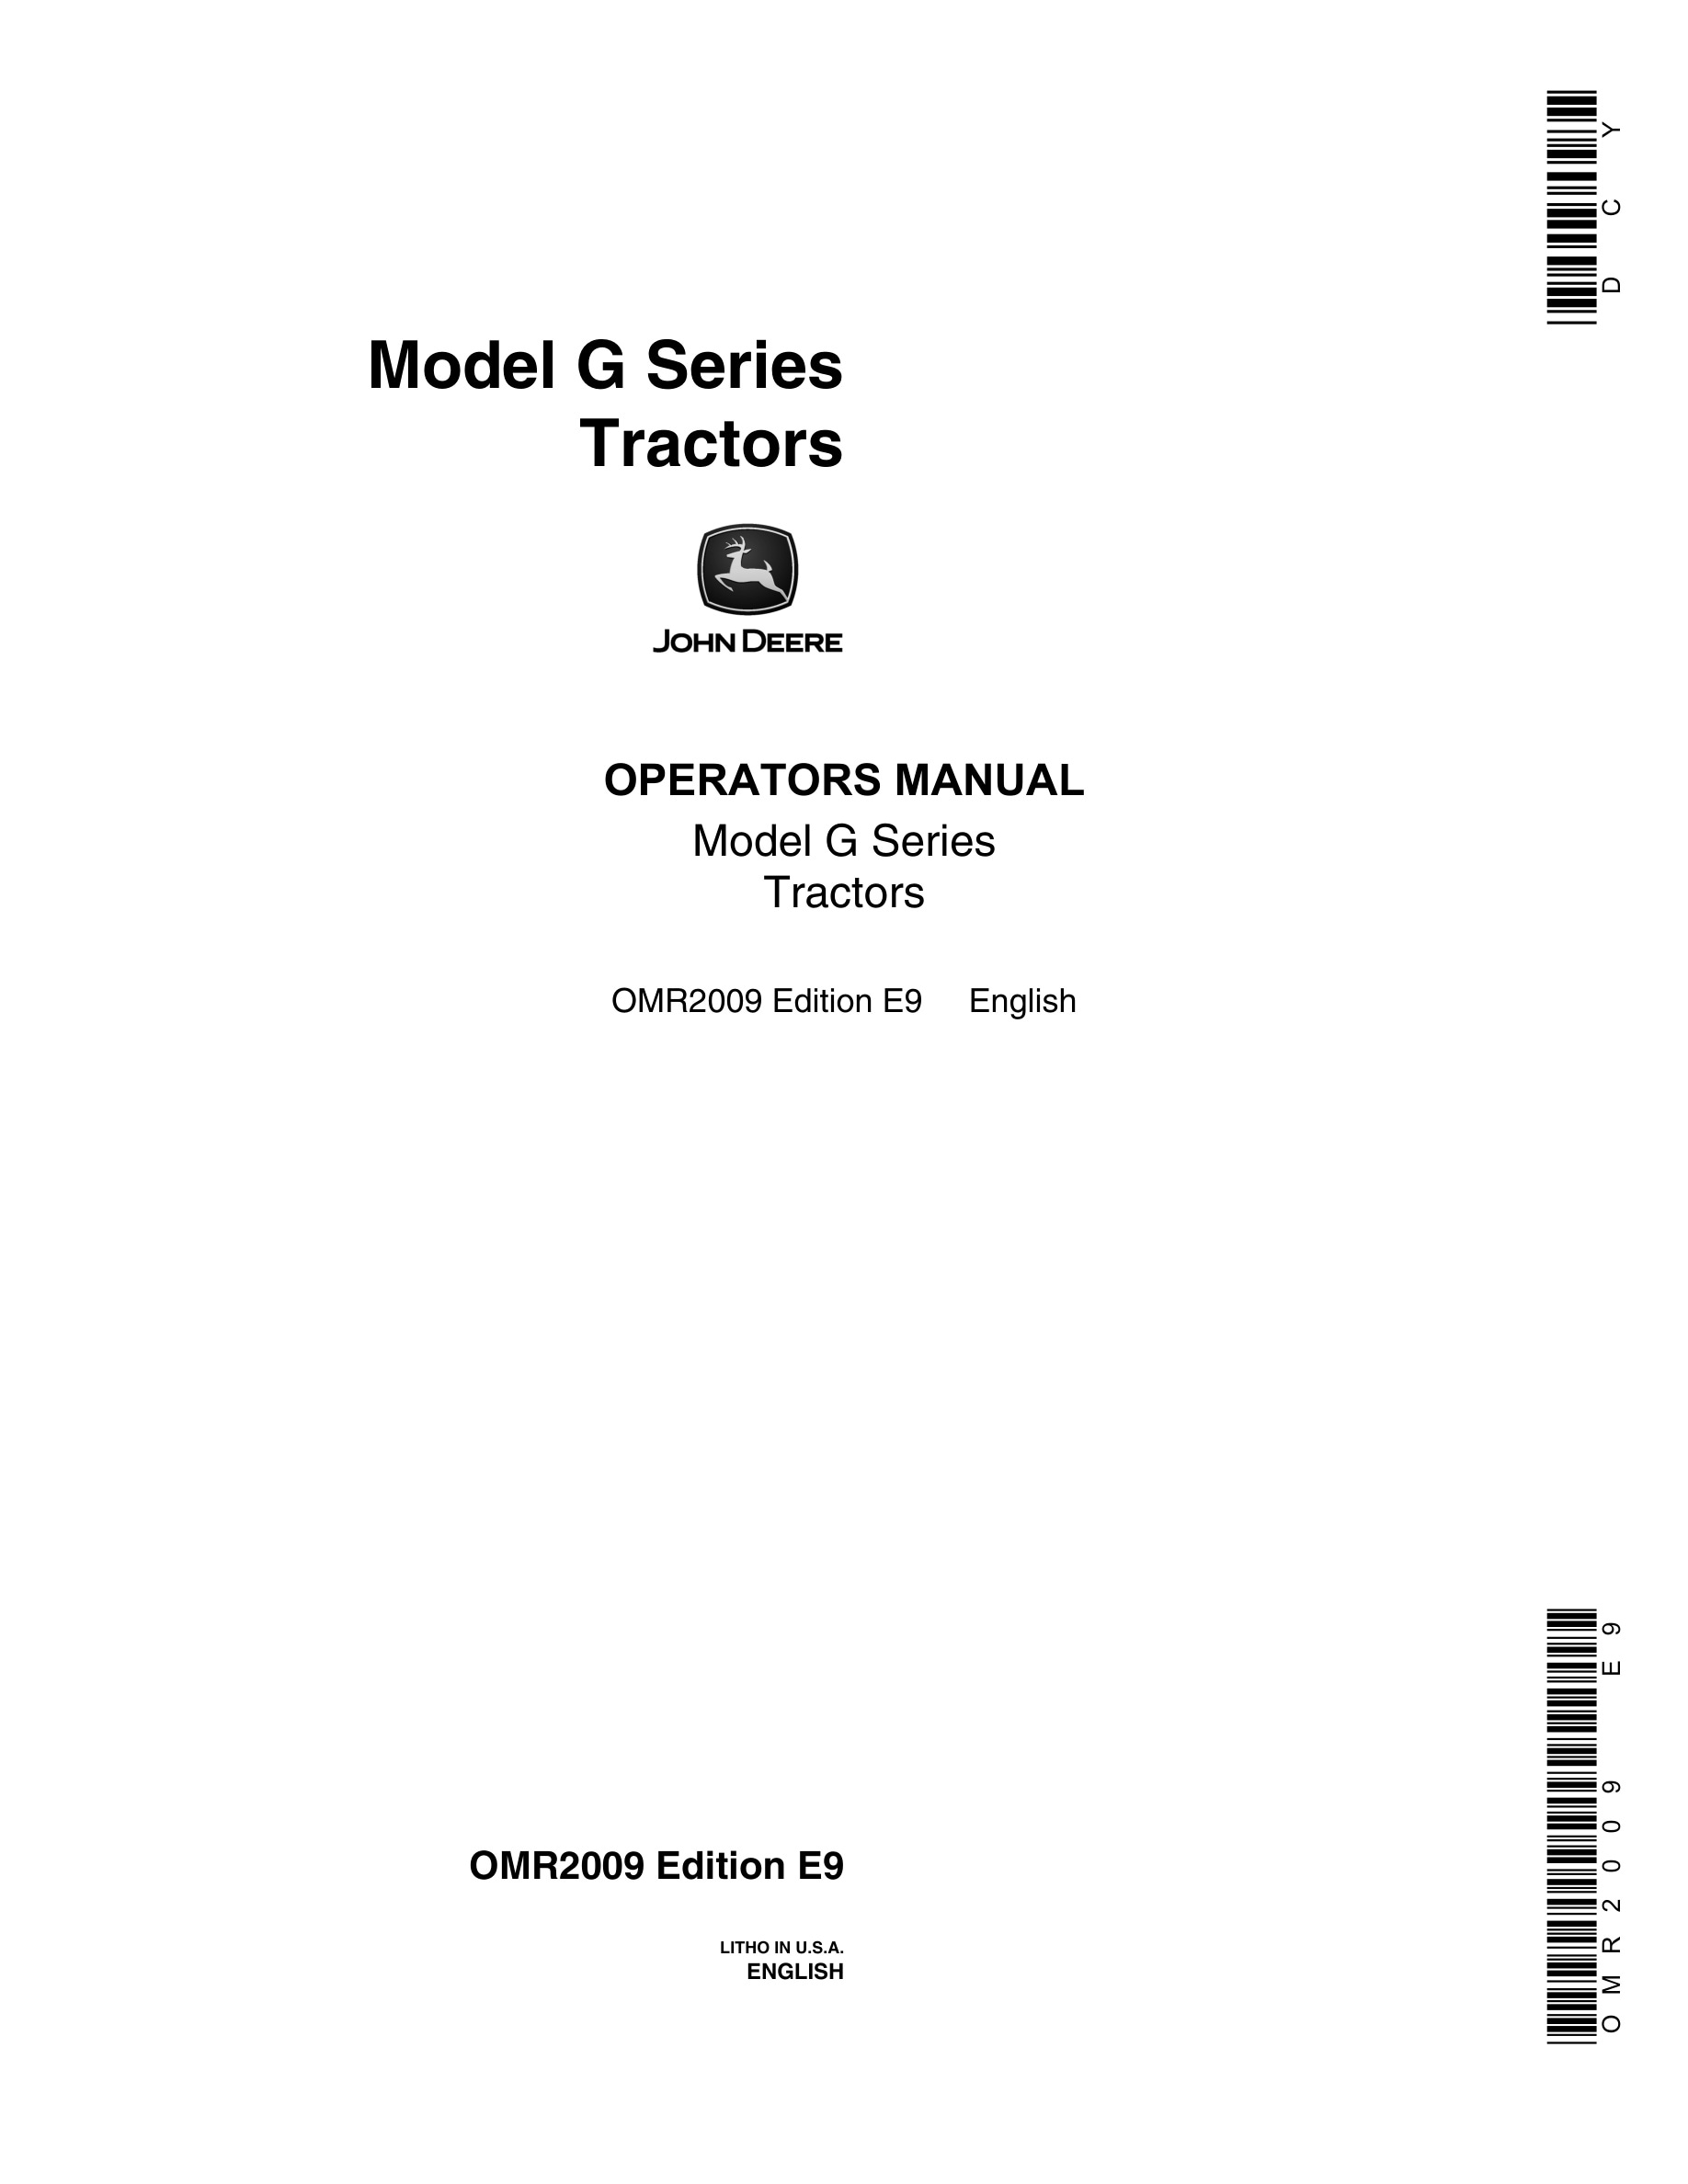 John Deere Model G Tractor Operator Manual OMR2009-1